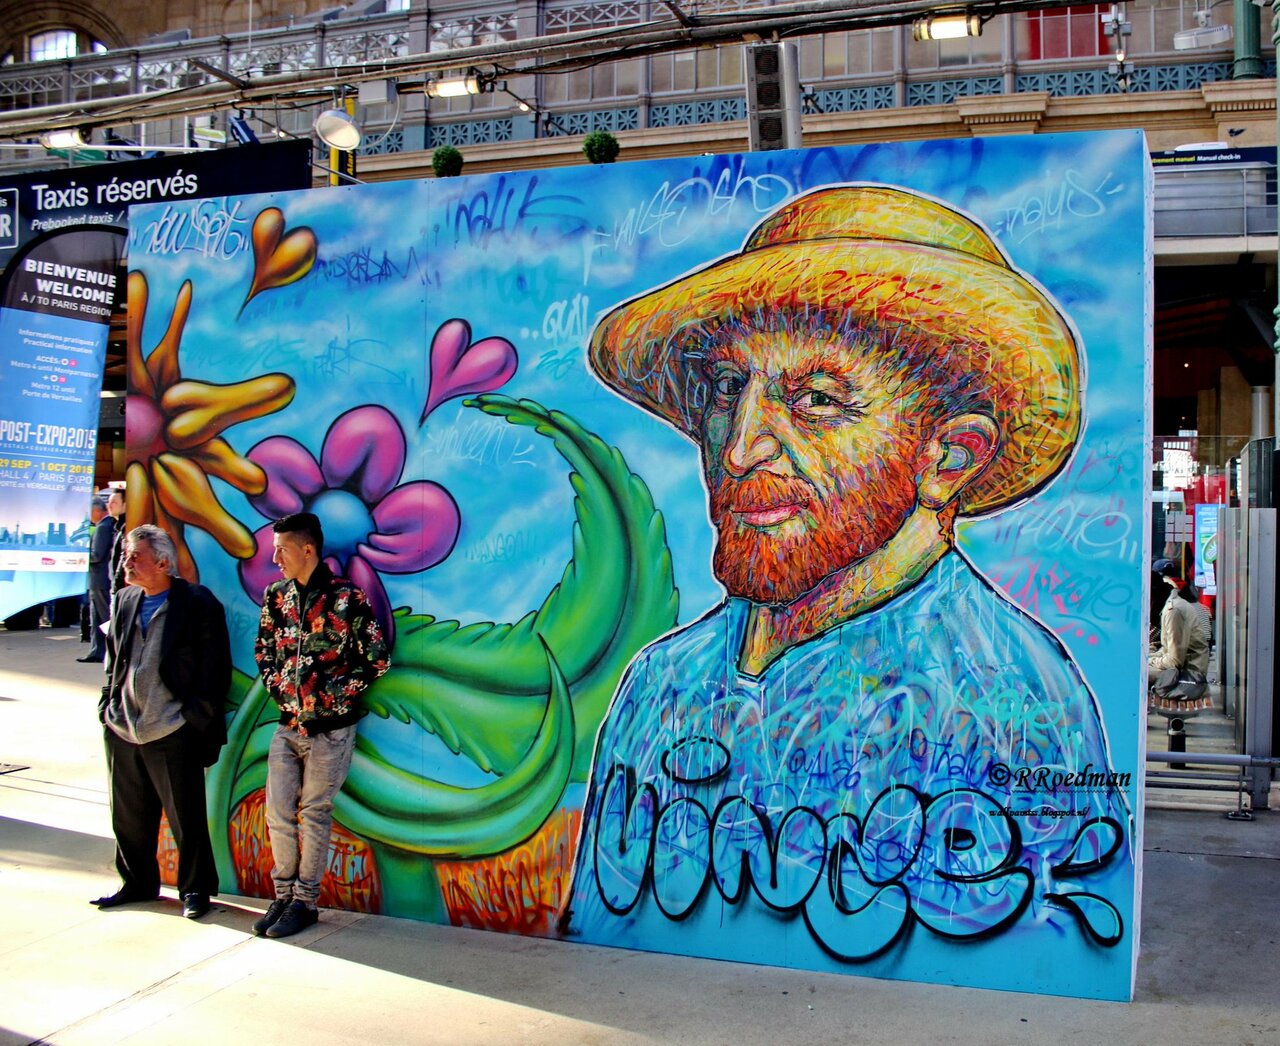 #streetart #graffiti #mural Vincent van Gogh in #Paris Gare du Nord ,2 pics at http://wallpaintss.blogspot.nl http://t.co/sADktzcEbn